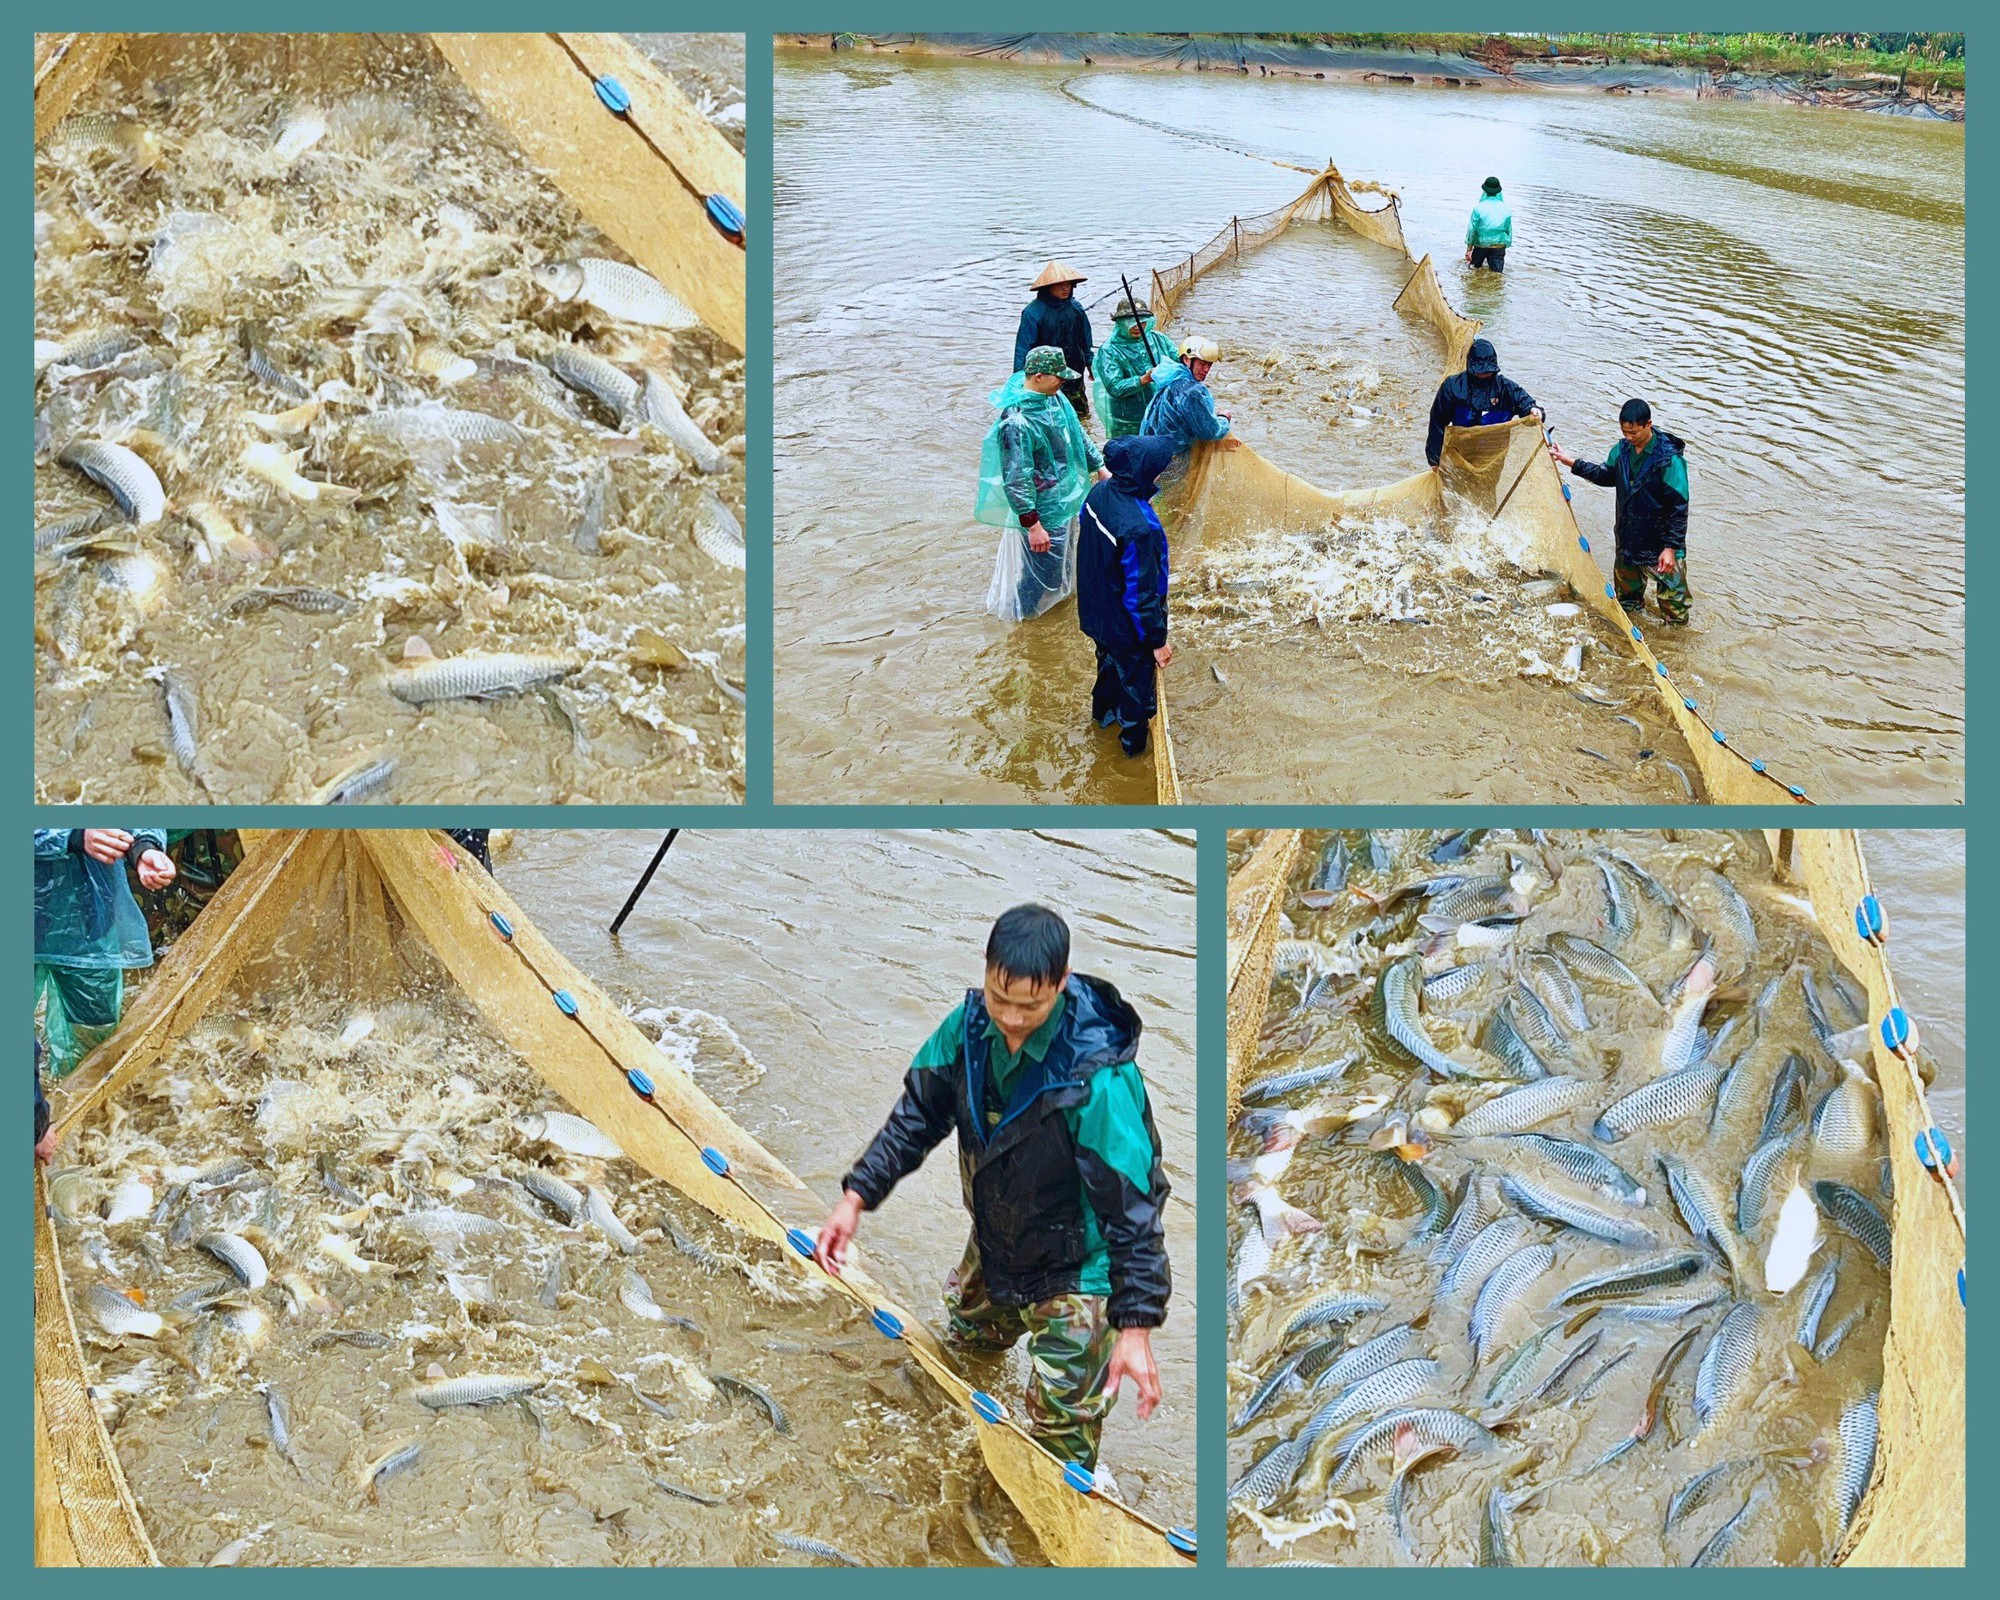 Cận cảnh những mẻ lưới đầy cá to bự dày đặc tại một ao nuôi ở Lào Cai, nhiều nhà thu tiền tỷ- Ảnh 1.